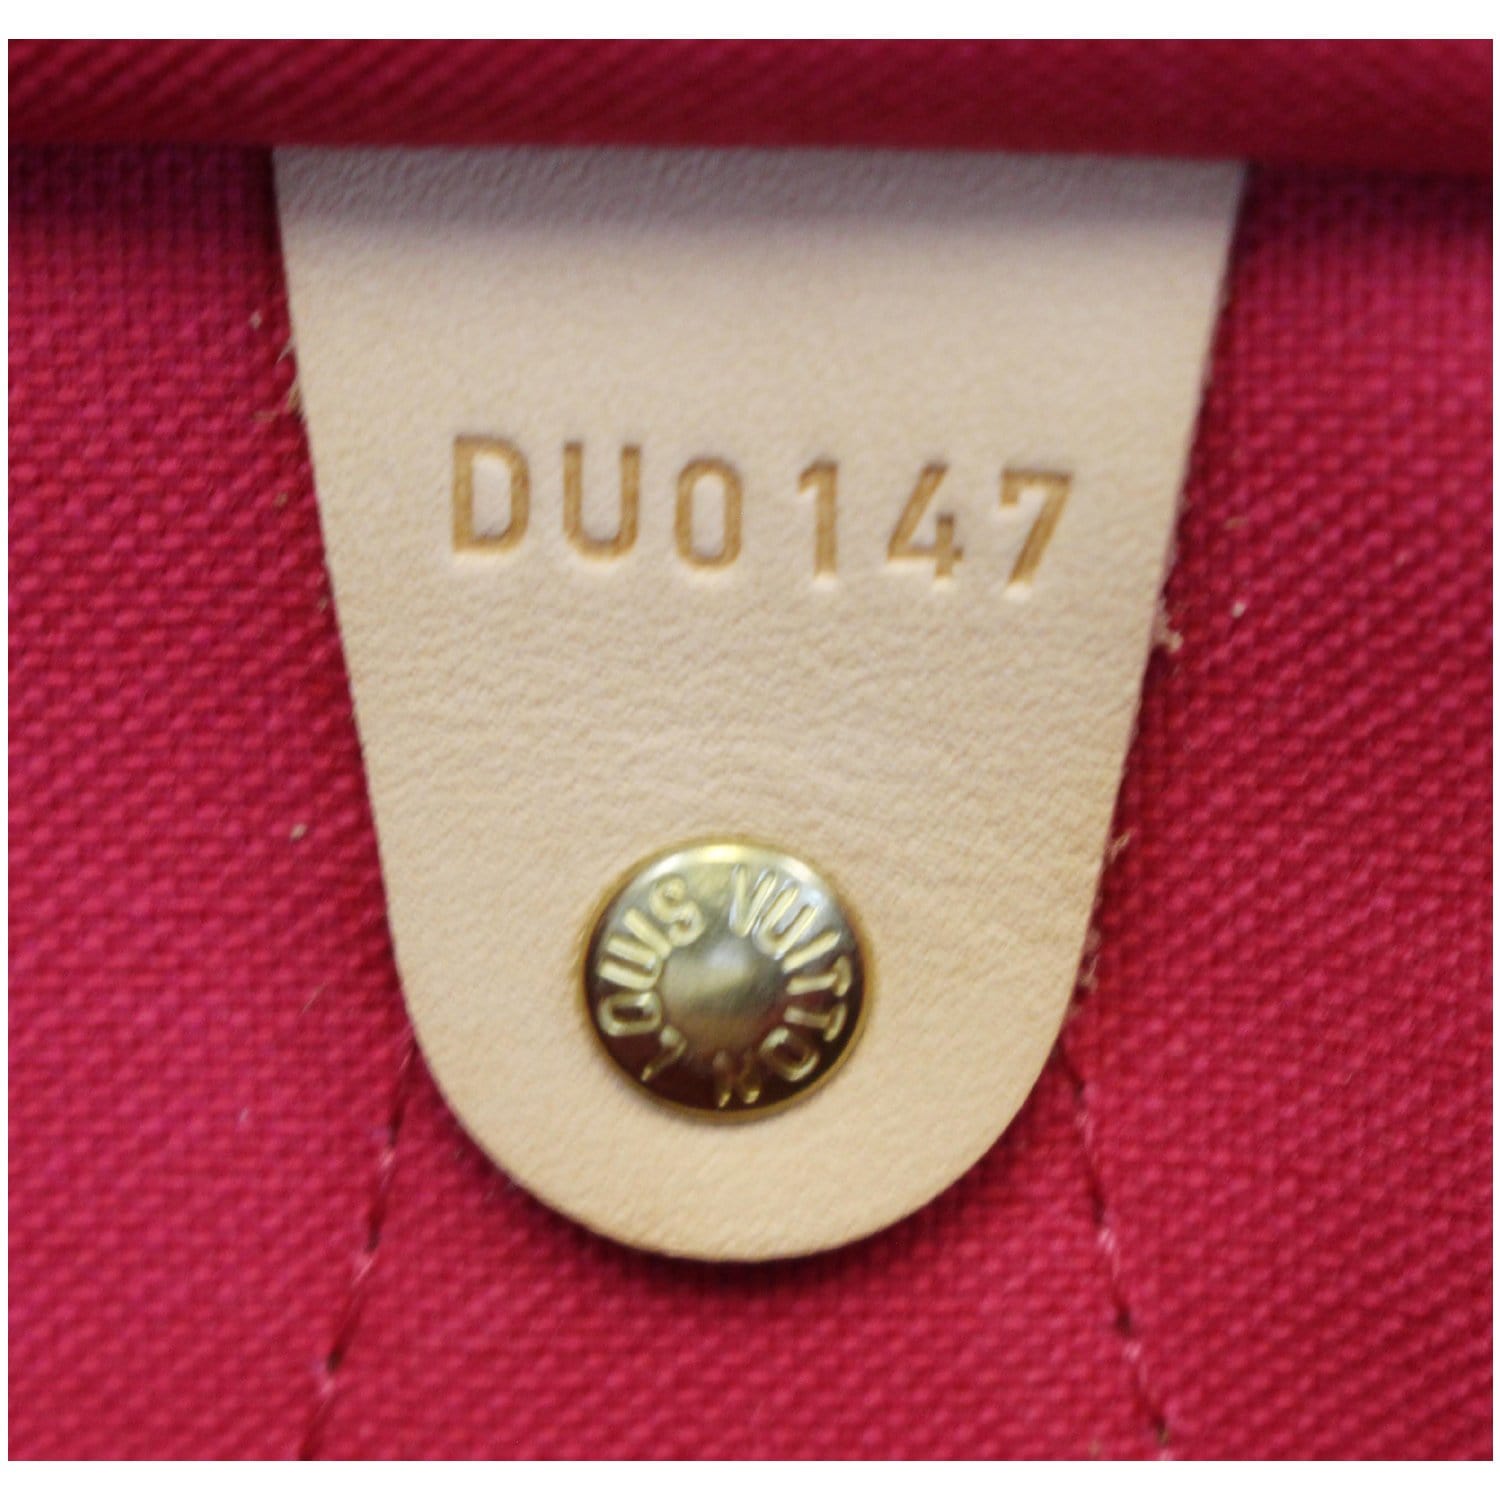 SUZY STORE - Bel arrivage 👛 Petit porte monnaie coeur doré Louis Vuitton  Monogram, Dustbag et sac en carton inclus, superbe pièce 🤩 Prix et infos  uniquement en mp par soucis de